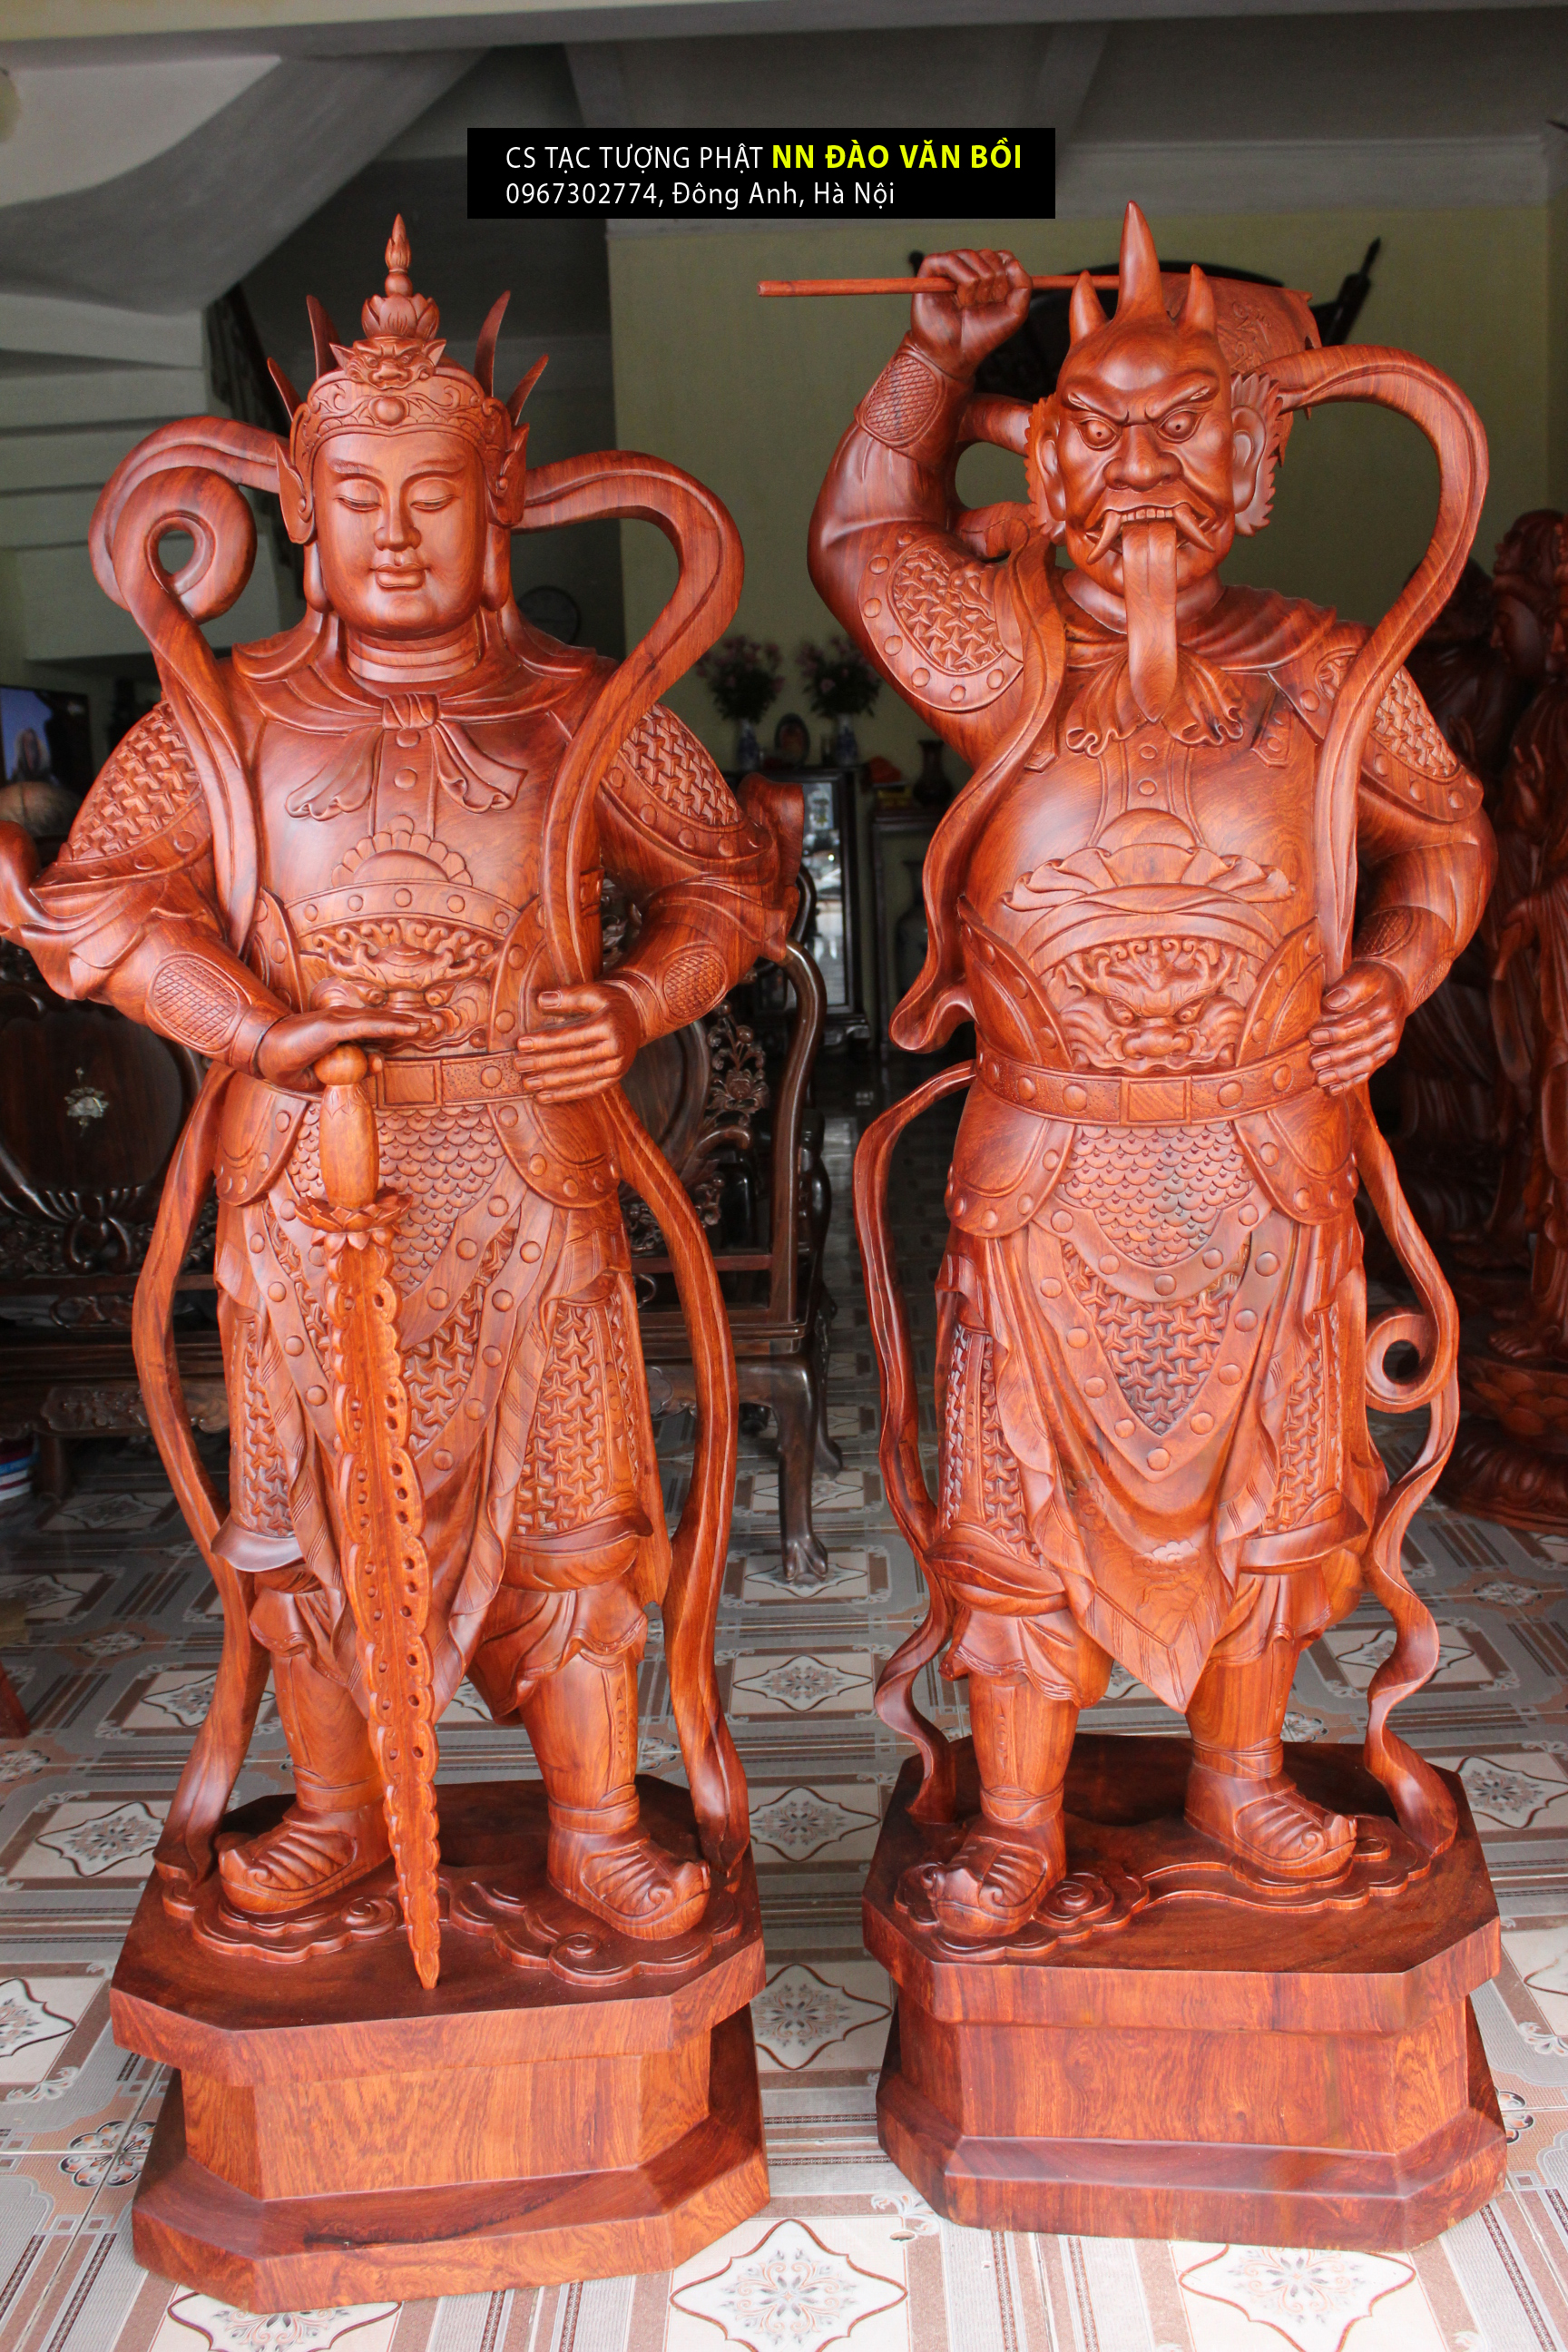 Tôn tượng 2 vị Hộ pháp Vi đà và Tiêu diện Đại sỹ gỗ Hương nguyên khối cao 1.5m